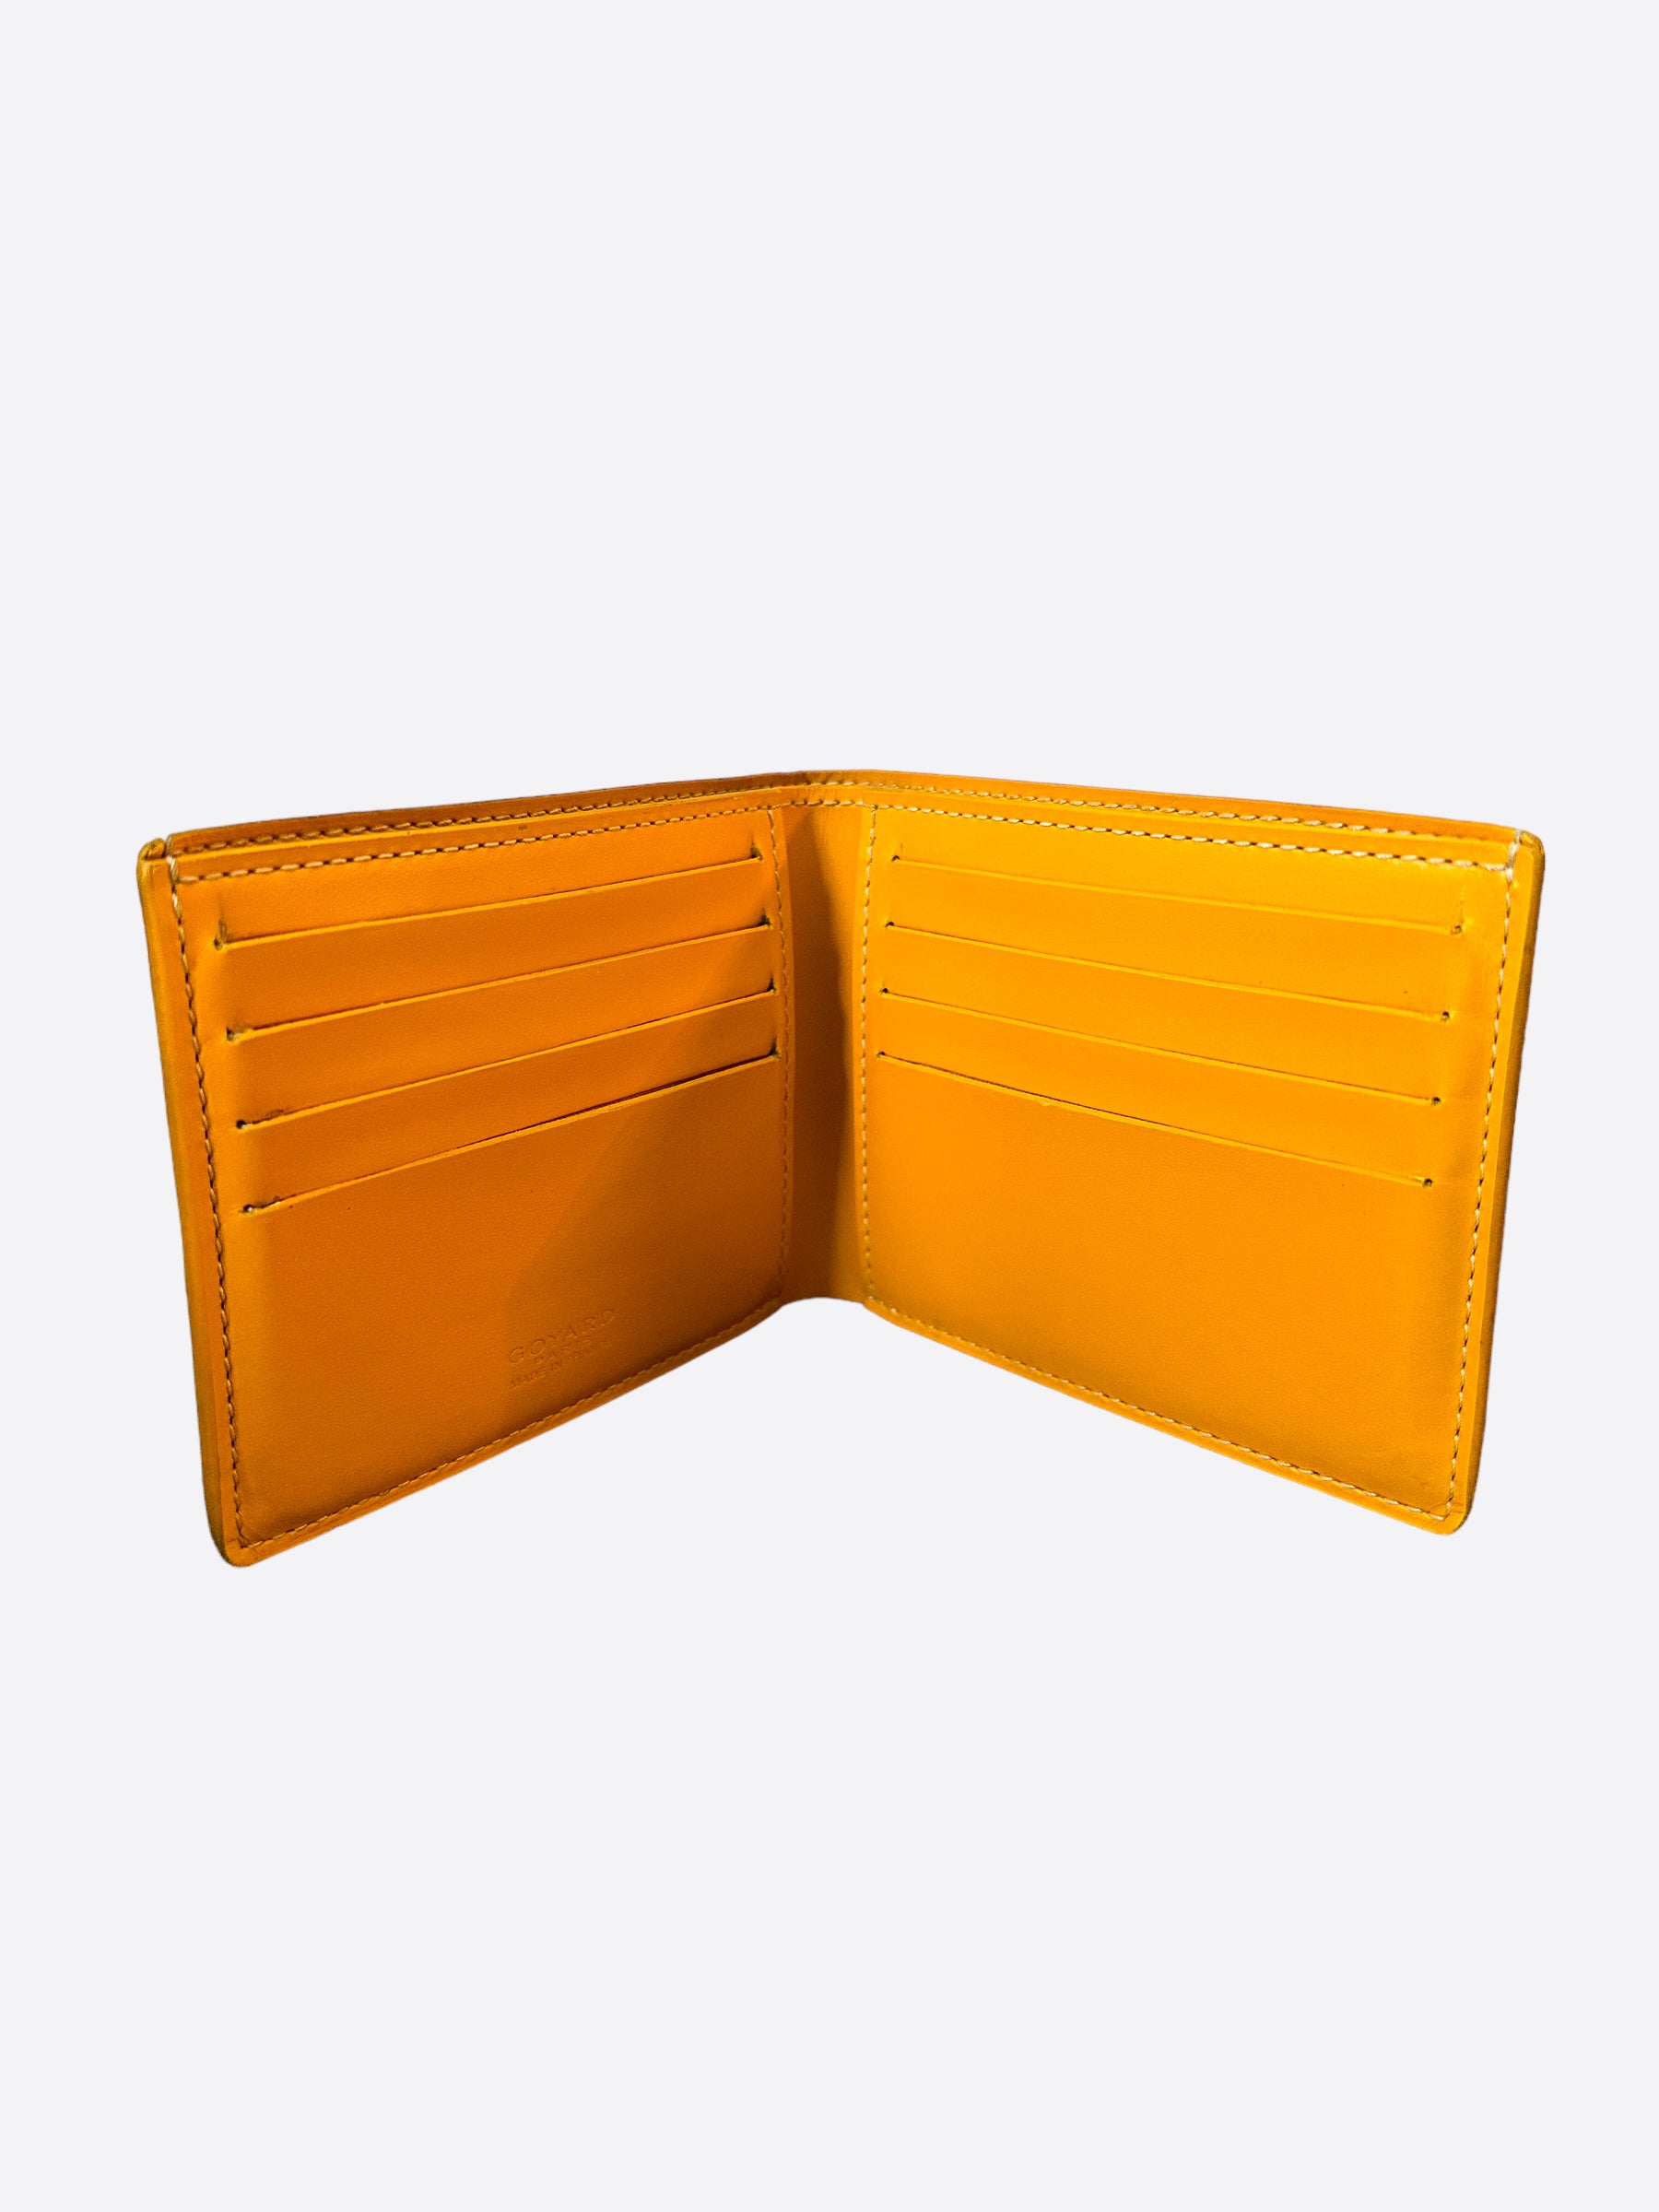 Goyard Yellow Wallets for Women